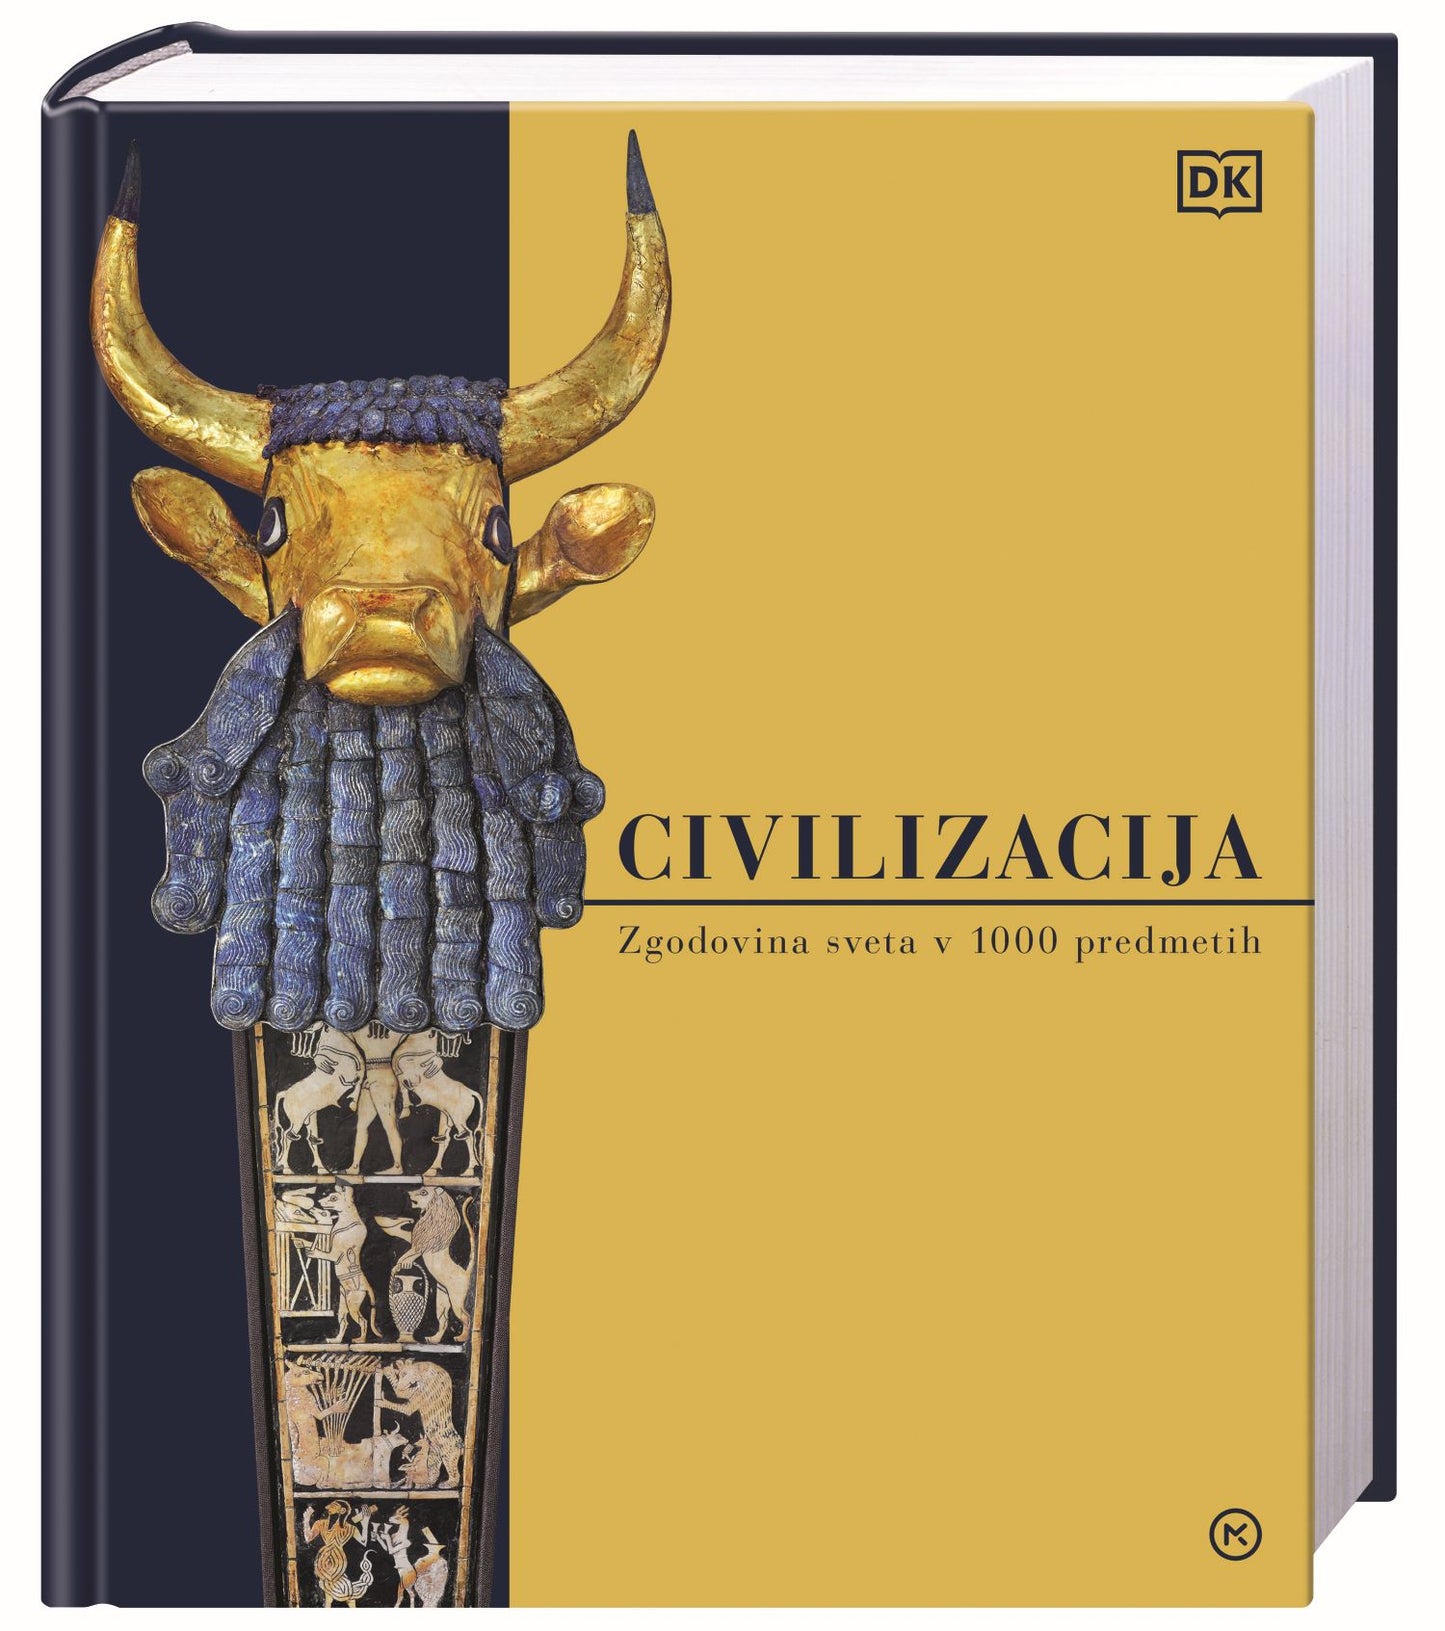 Civilizacija: Zgodovina sveta v 1000 predmetih